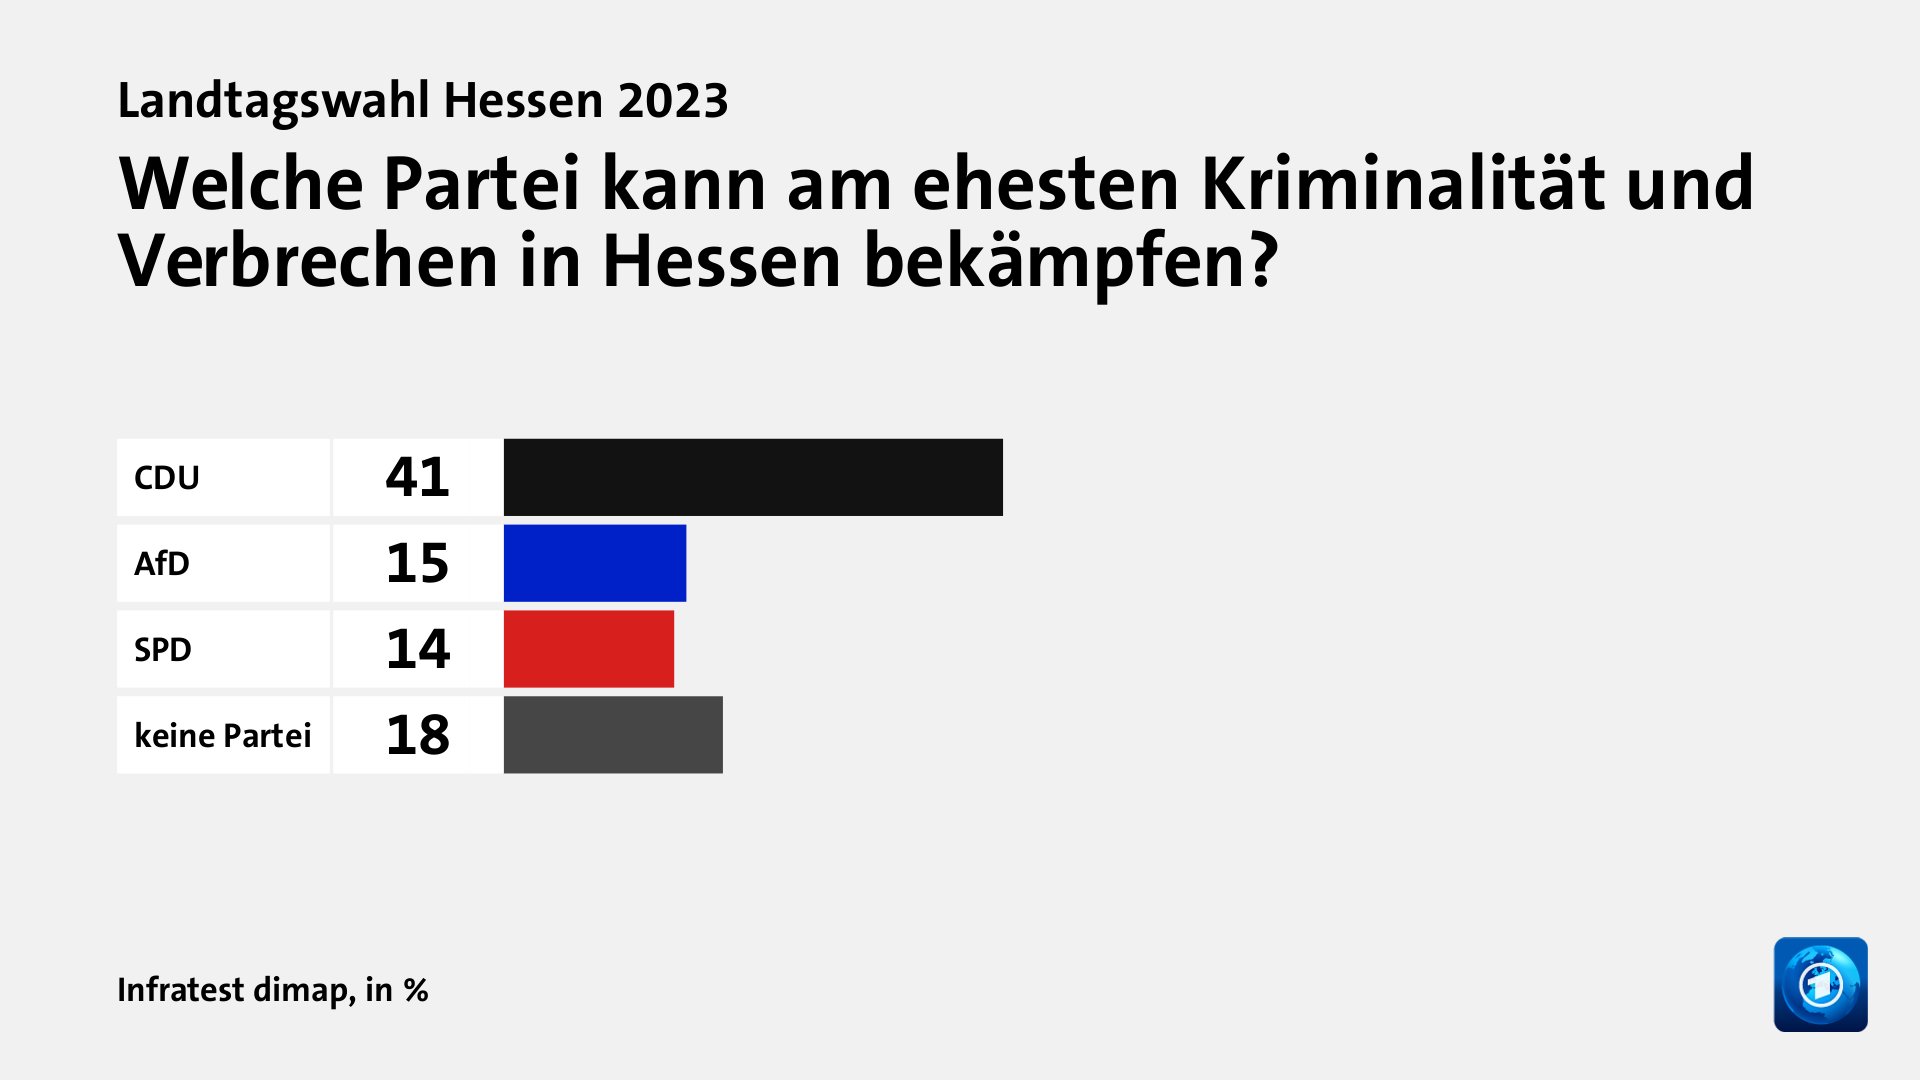 Welche Partei kann am ehesten Kriminalität und Verbrechen in Hessen bekämpfen?, in %: CDU 41, AfD 15, SPD 14, keine Partei 18, Quelle: Infratest dimap